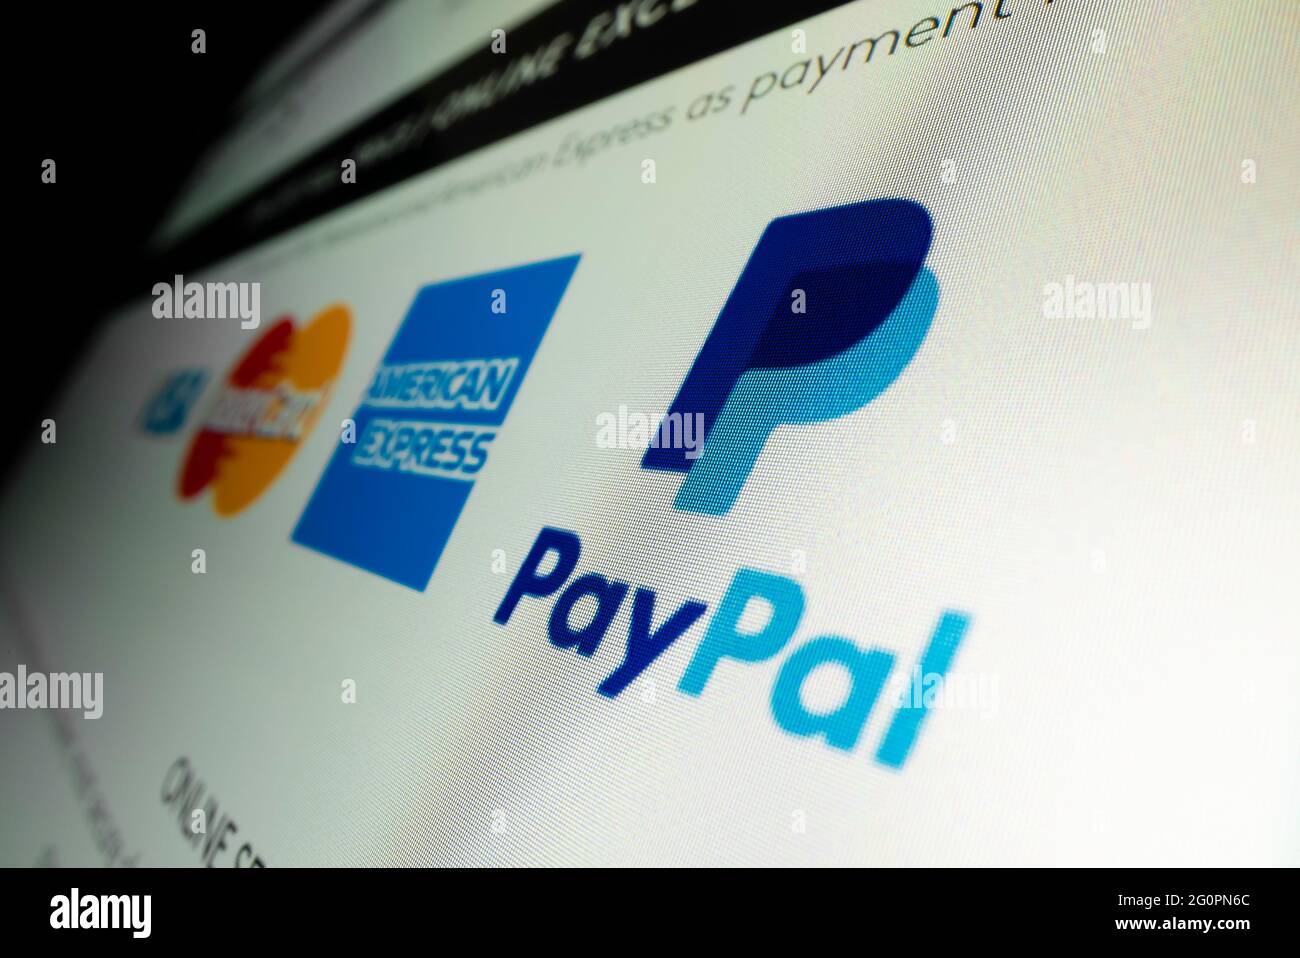 Vista de cerca del logotipo de Paypal en el sitio web de compras en línea Foto de stock